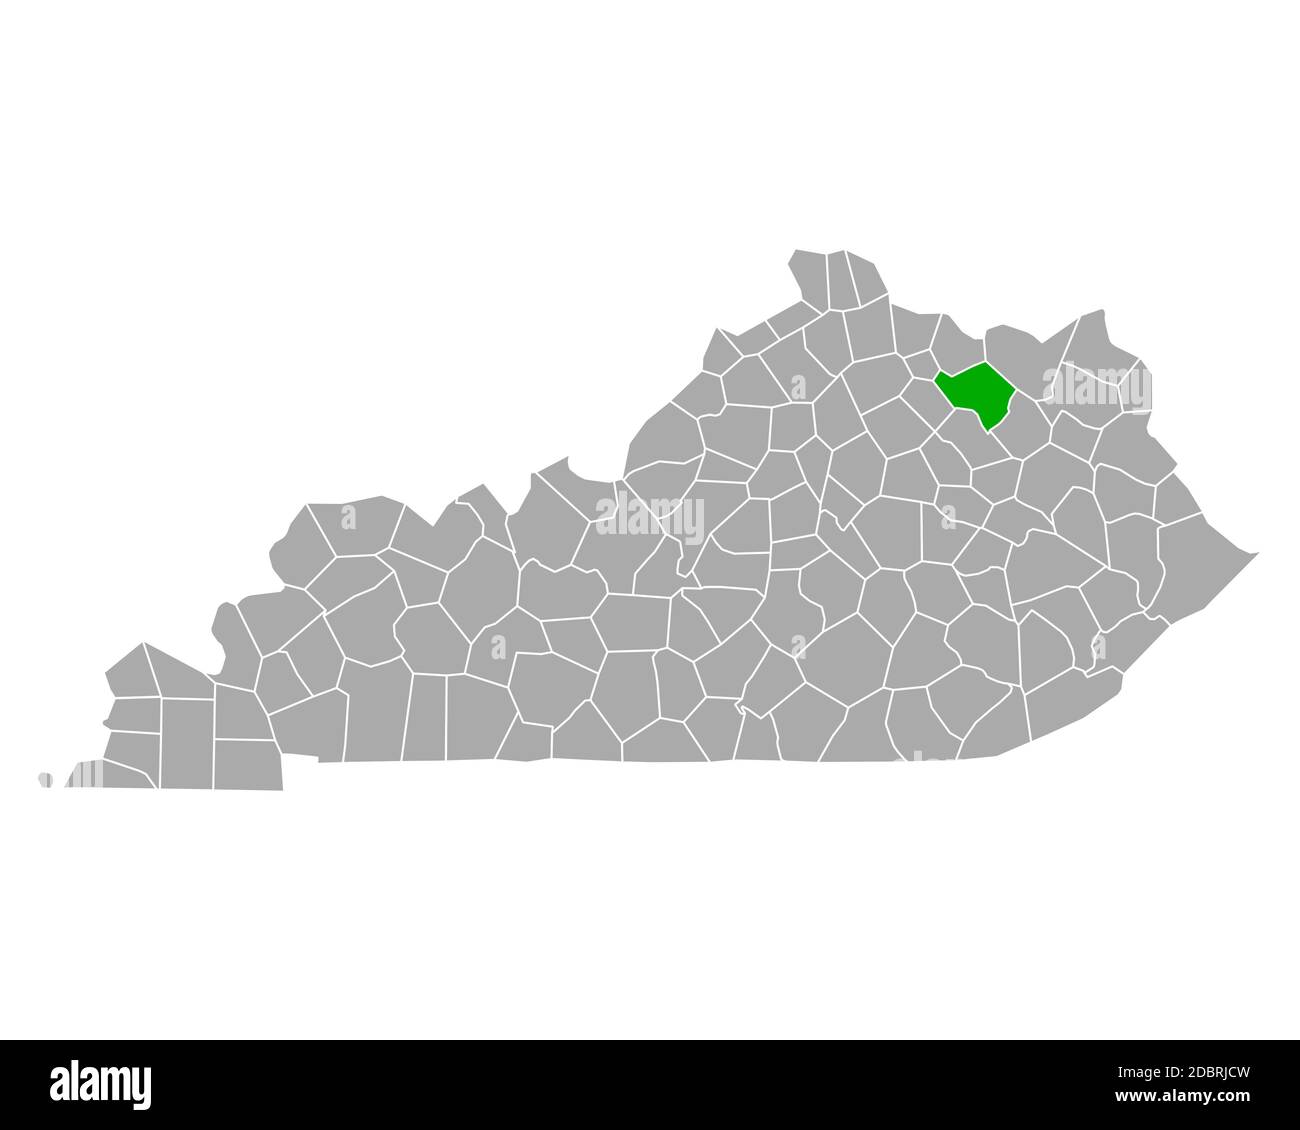 Map Of Fleming In Kentucky 2DBRJCW 